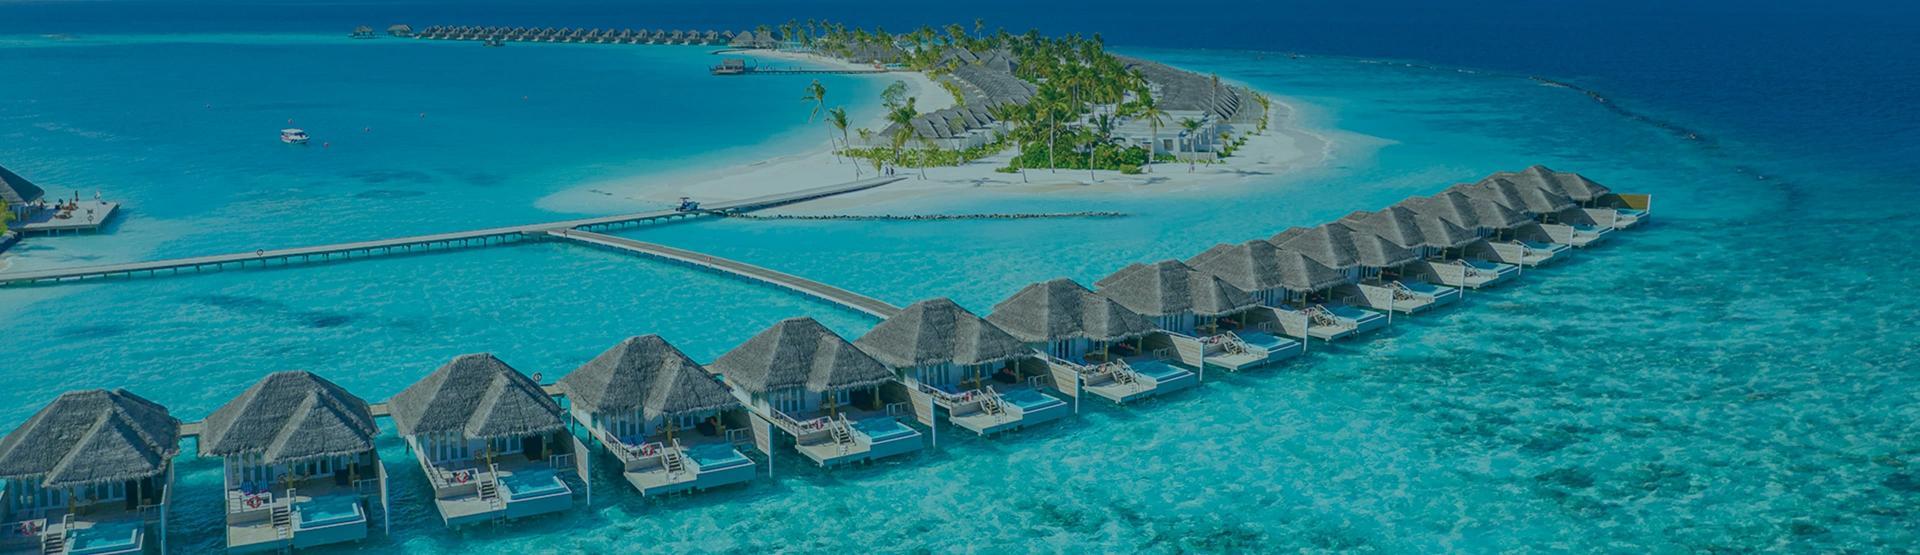 Book Cheap Flights to Maldives